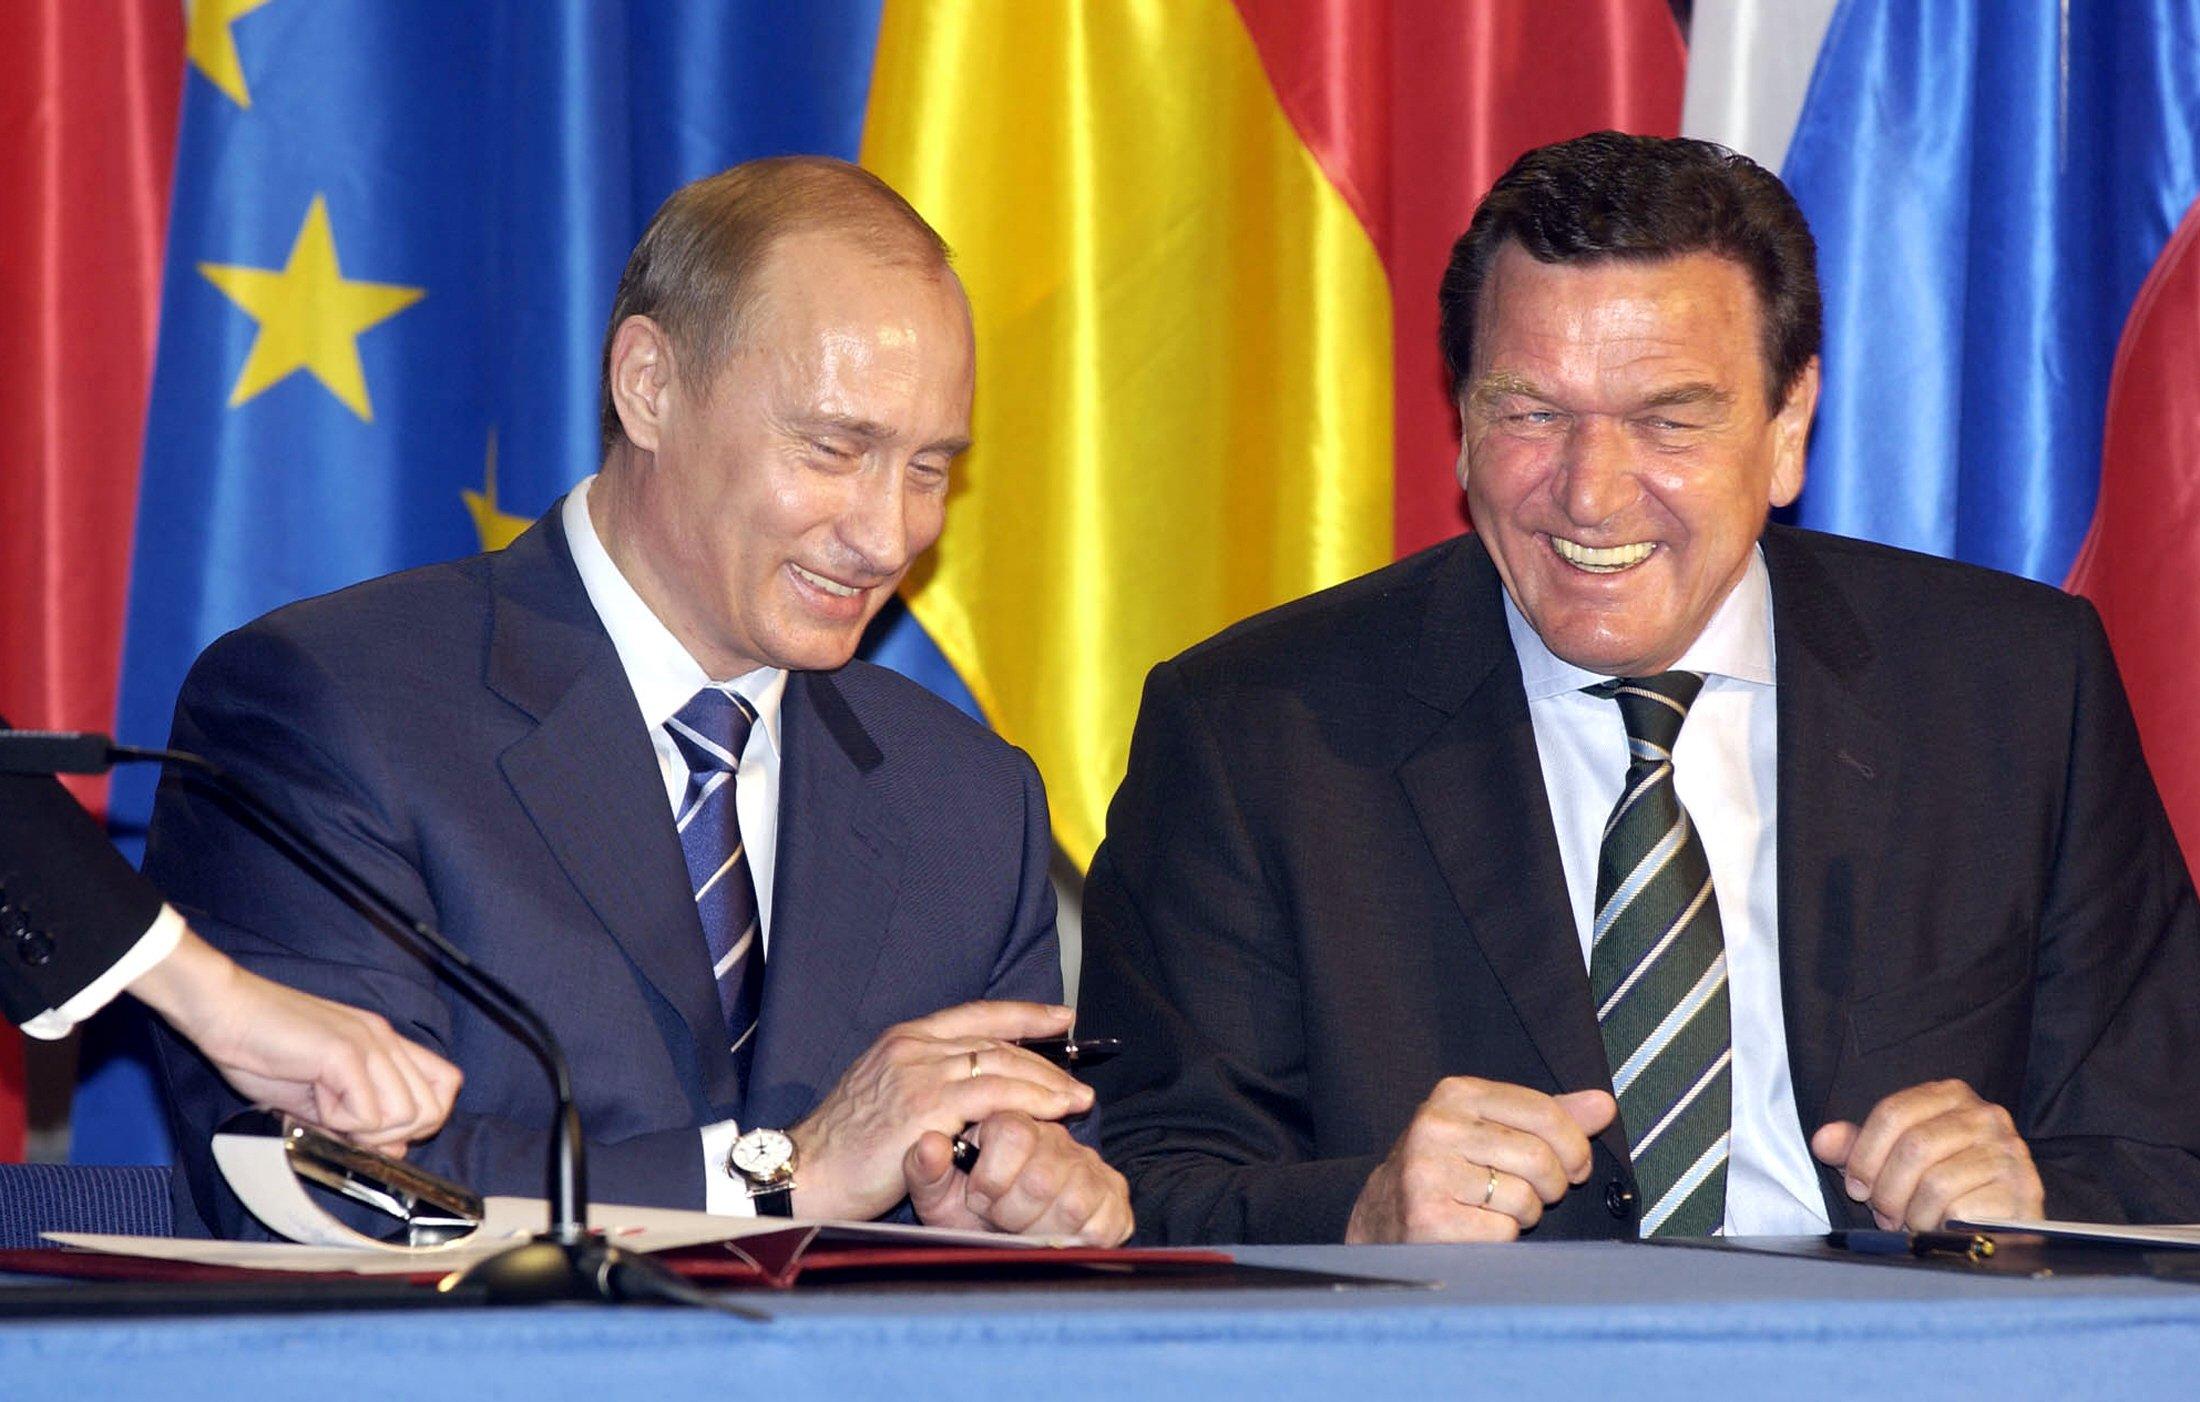 Kanclerz Niemiec Gerhard Schroeder (R) i prezydent Rosji Władimir Putin uśmiechają się podczas ceremonii podpisania umowy